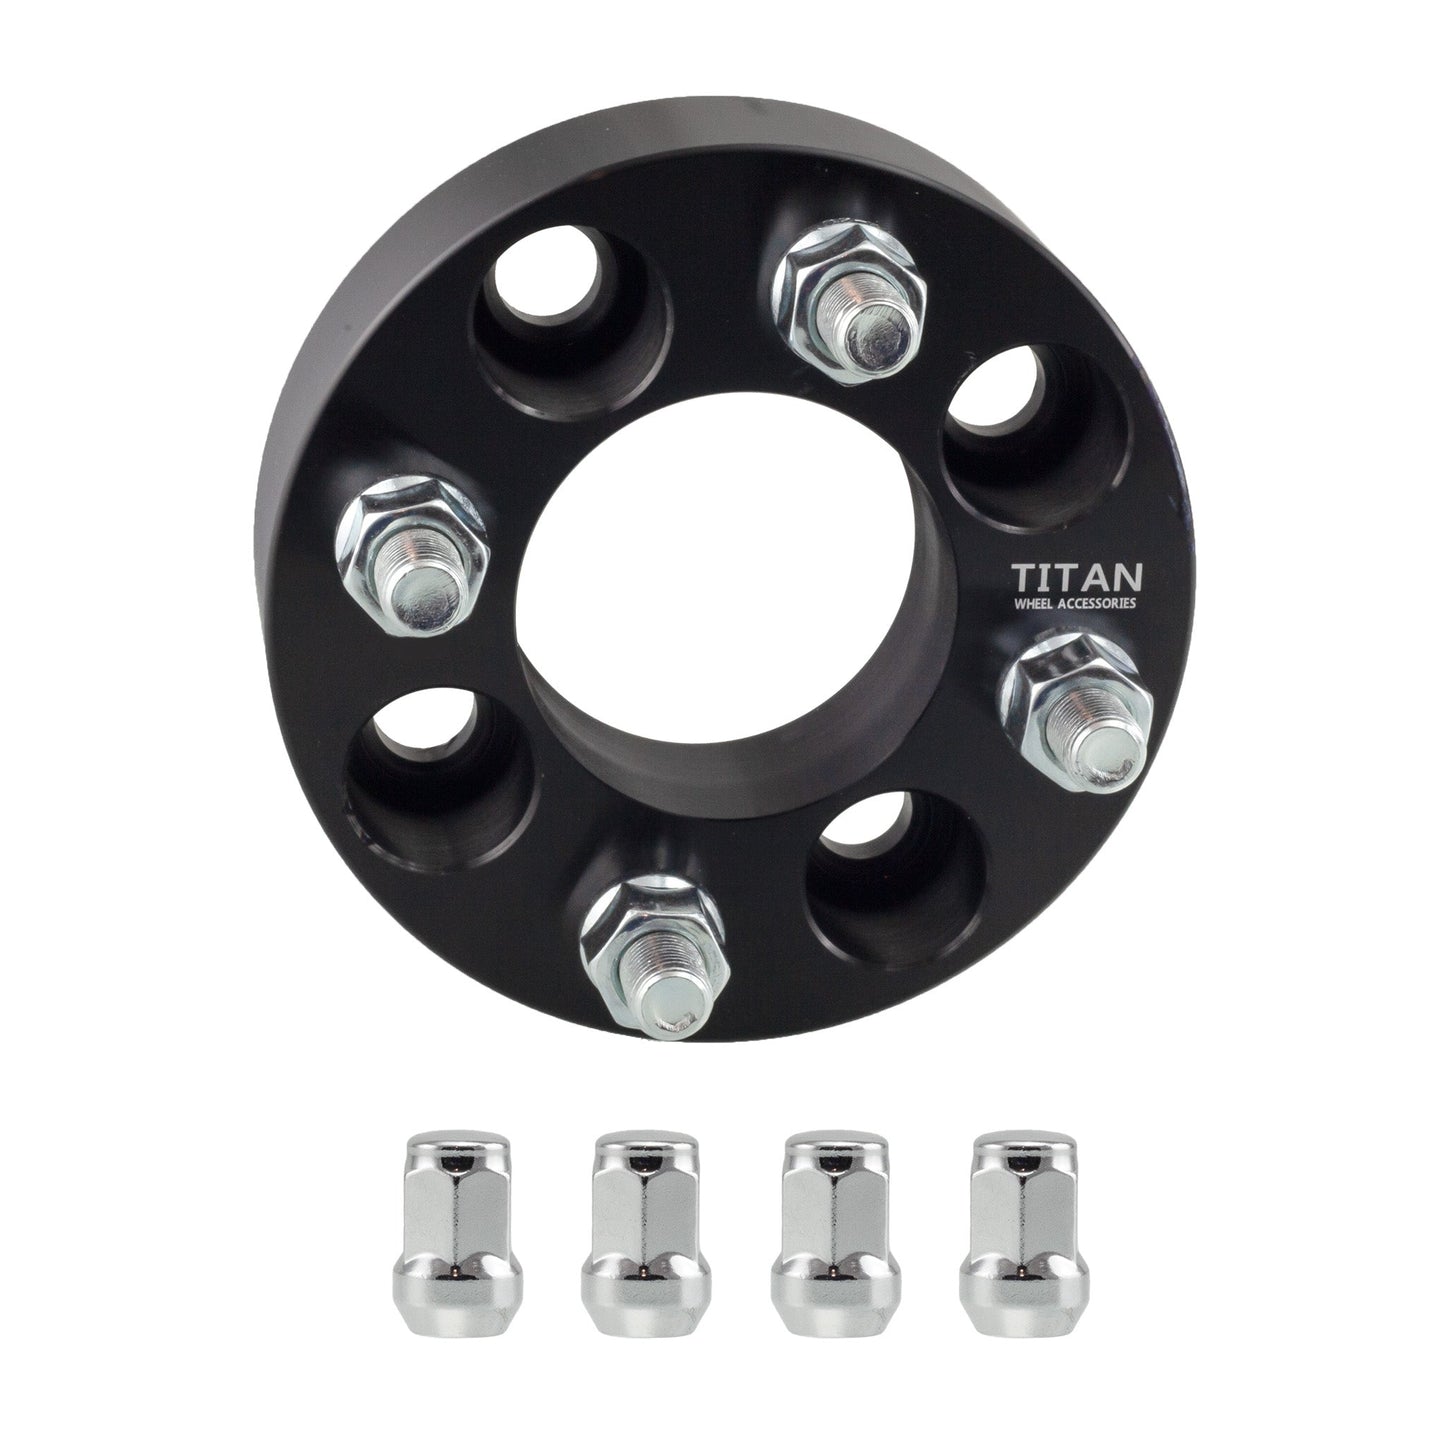 20mm Titan Wheel Spacers for Mazda Miata Scion xB Toyota MR2 Celica | 4x100 | 54.1 Hubcentric | 12x1.5 Studs | Titan Wheel Accessories